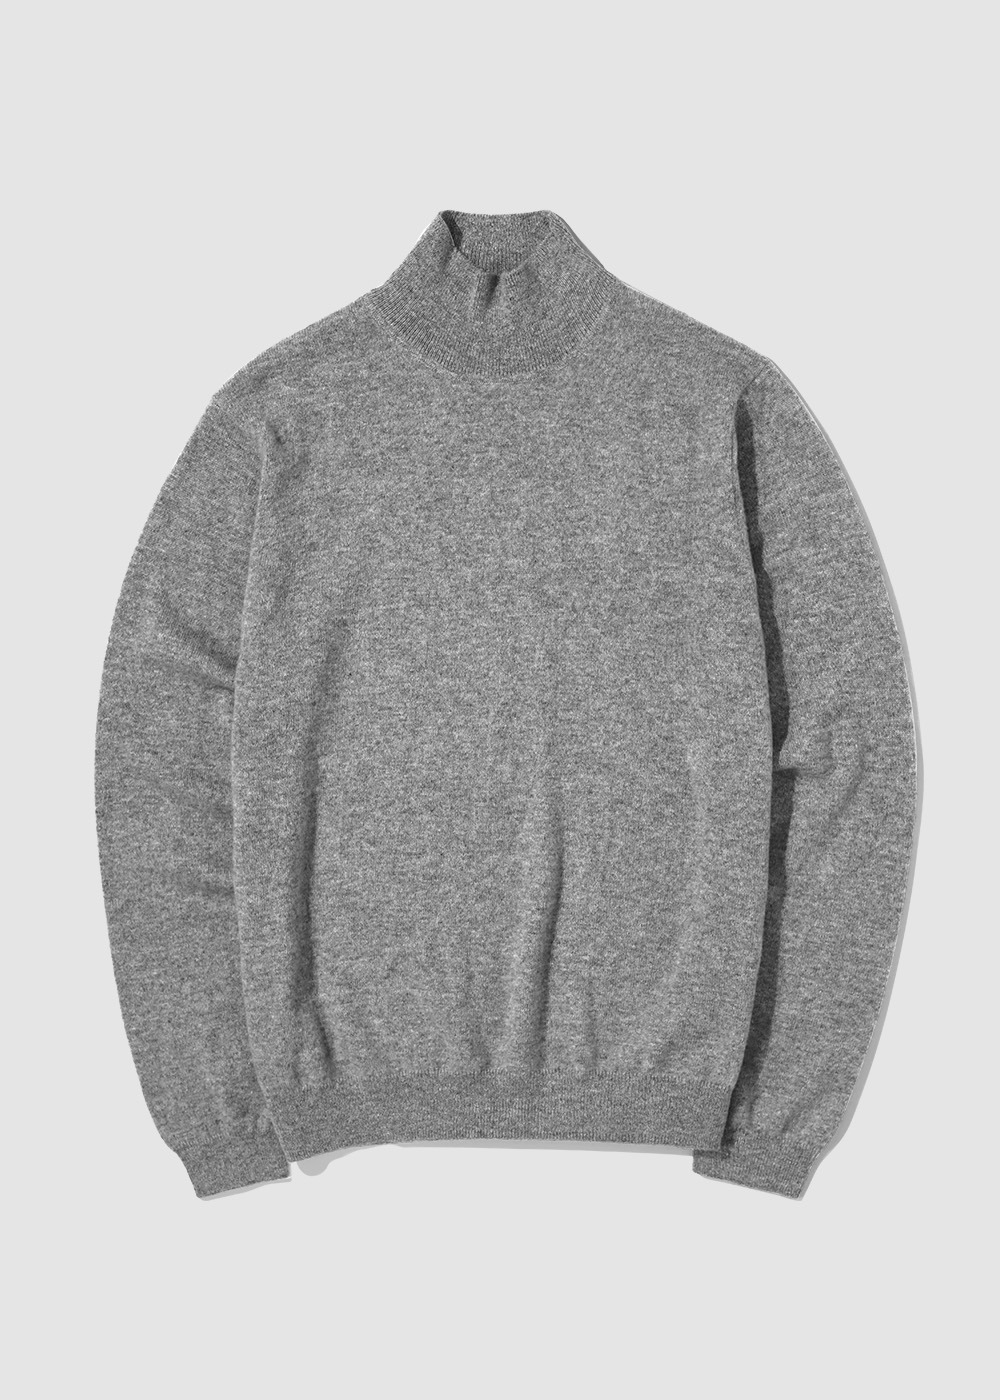 Cashmere 30% Blended Mockneck Knit _ gray